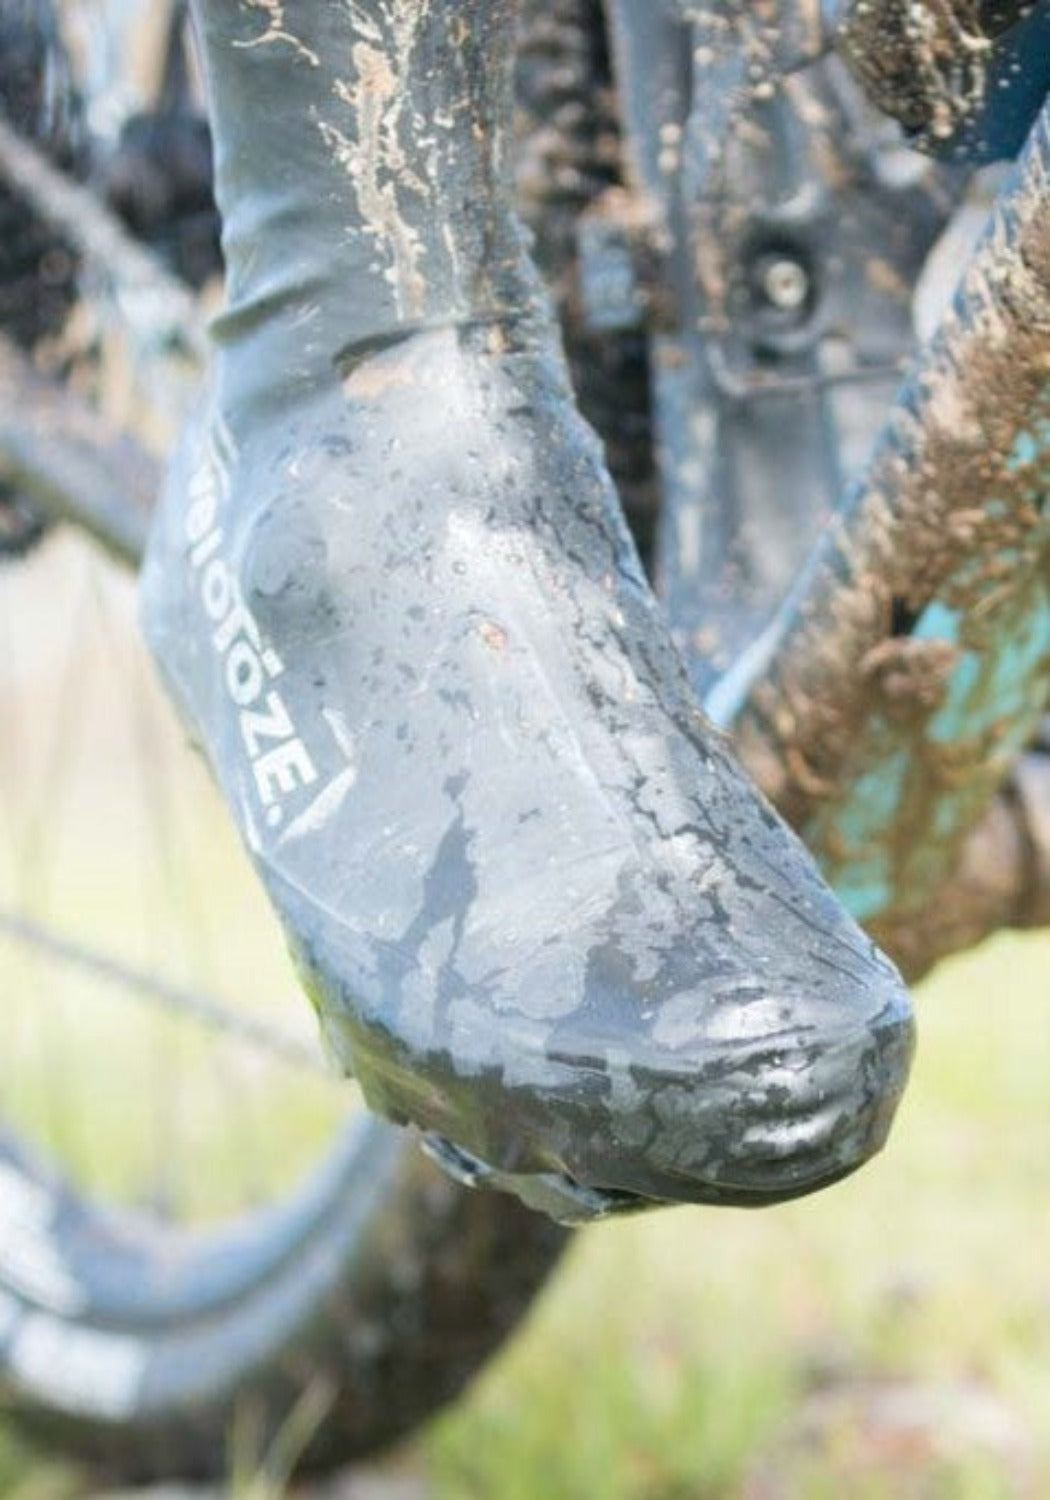 Couvre chaussures vélo, Protégez vos pieds du froid et de la pluie